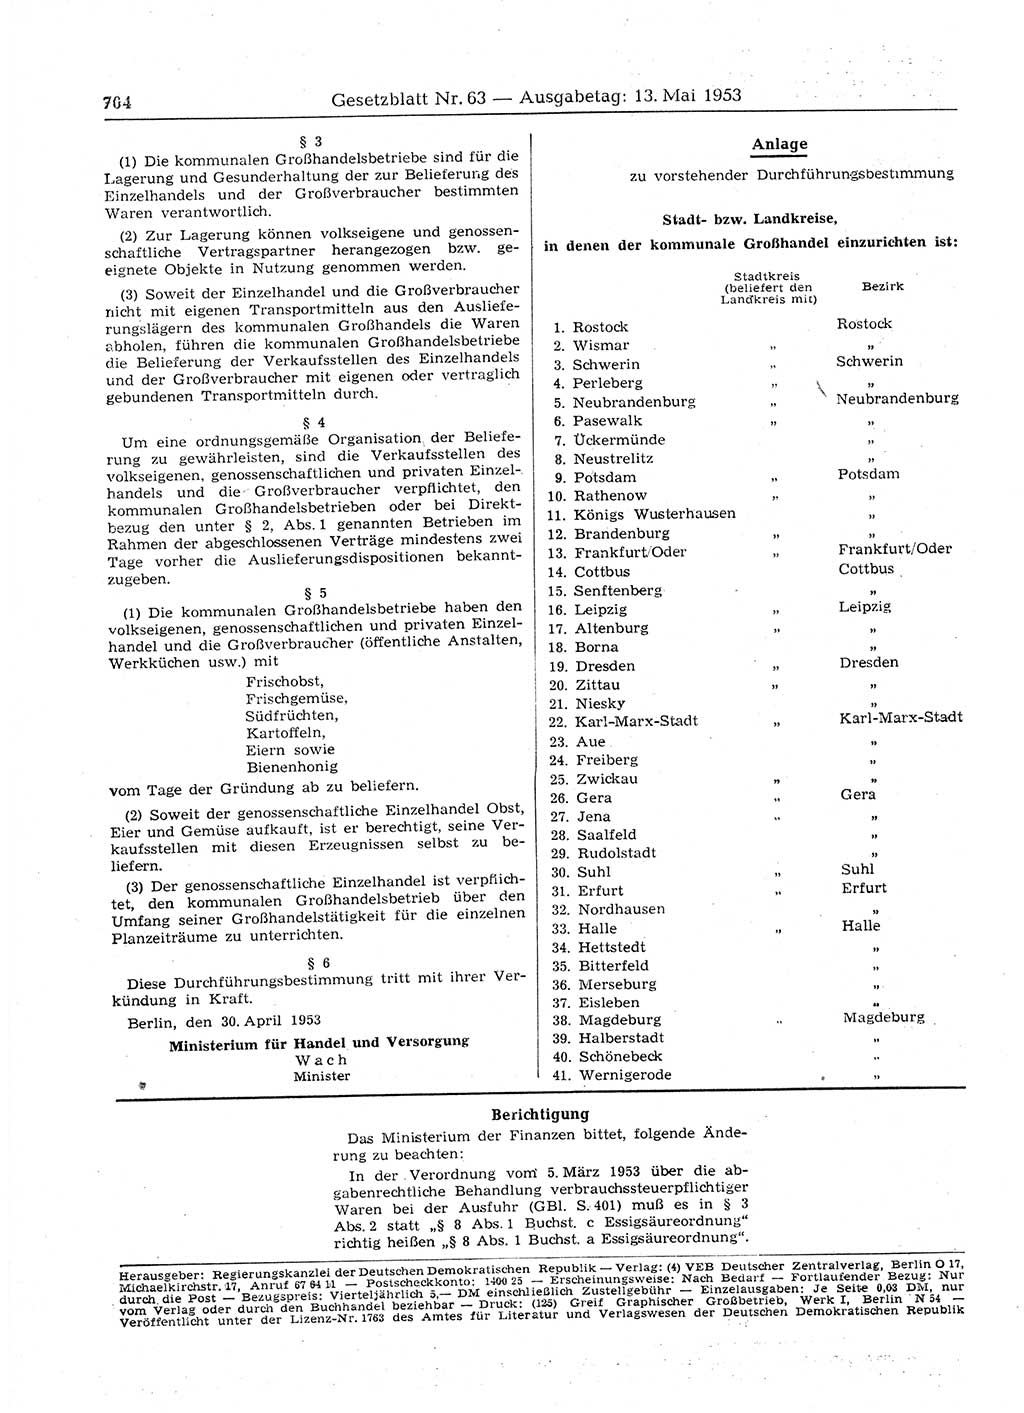 Gesetzblatt (GBl.) der Deutschen Demokratischen Republik (DDR) 1953, Seite 704 (GBl. DDR 1953, S. 704)